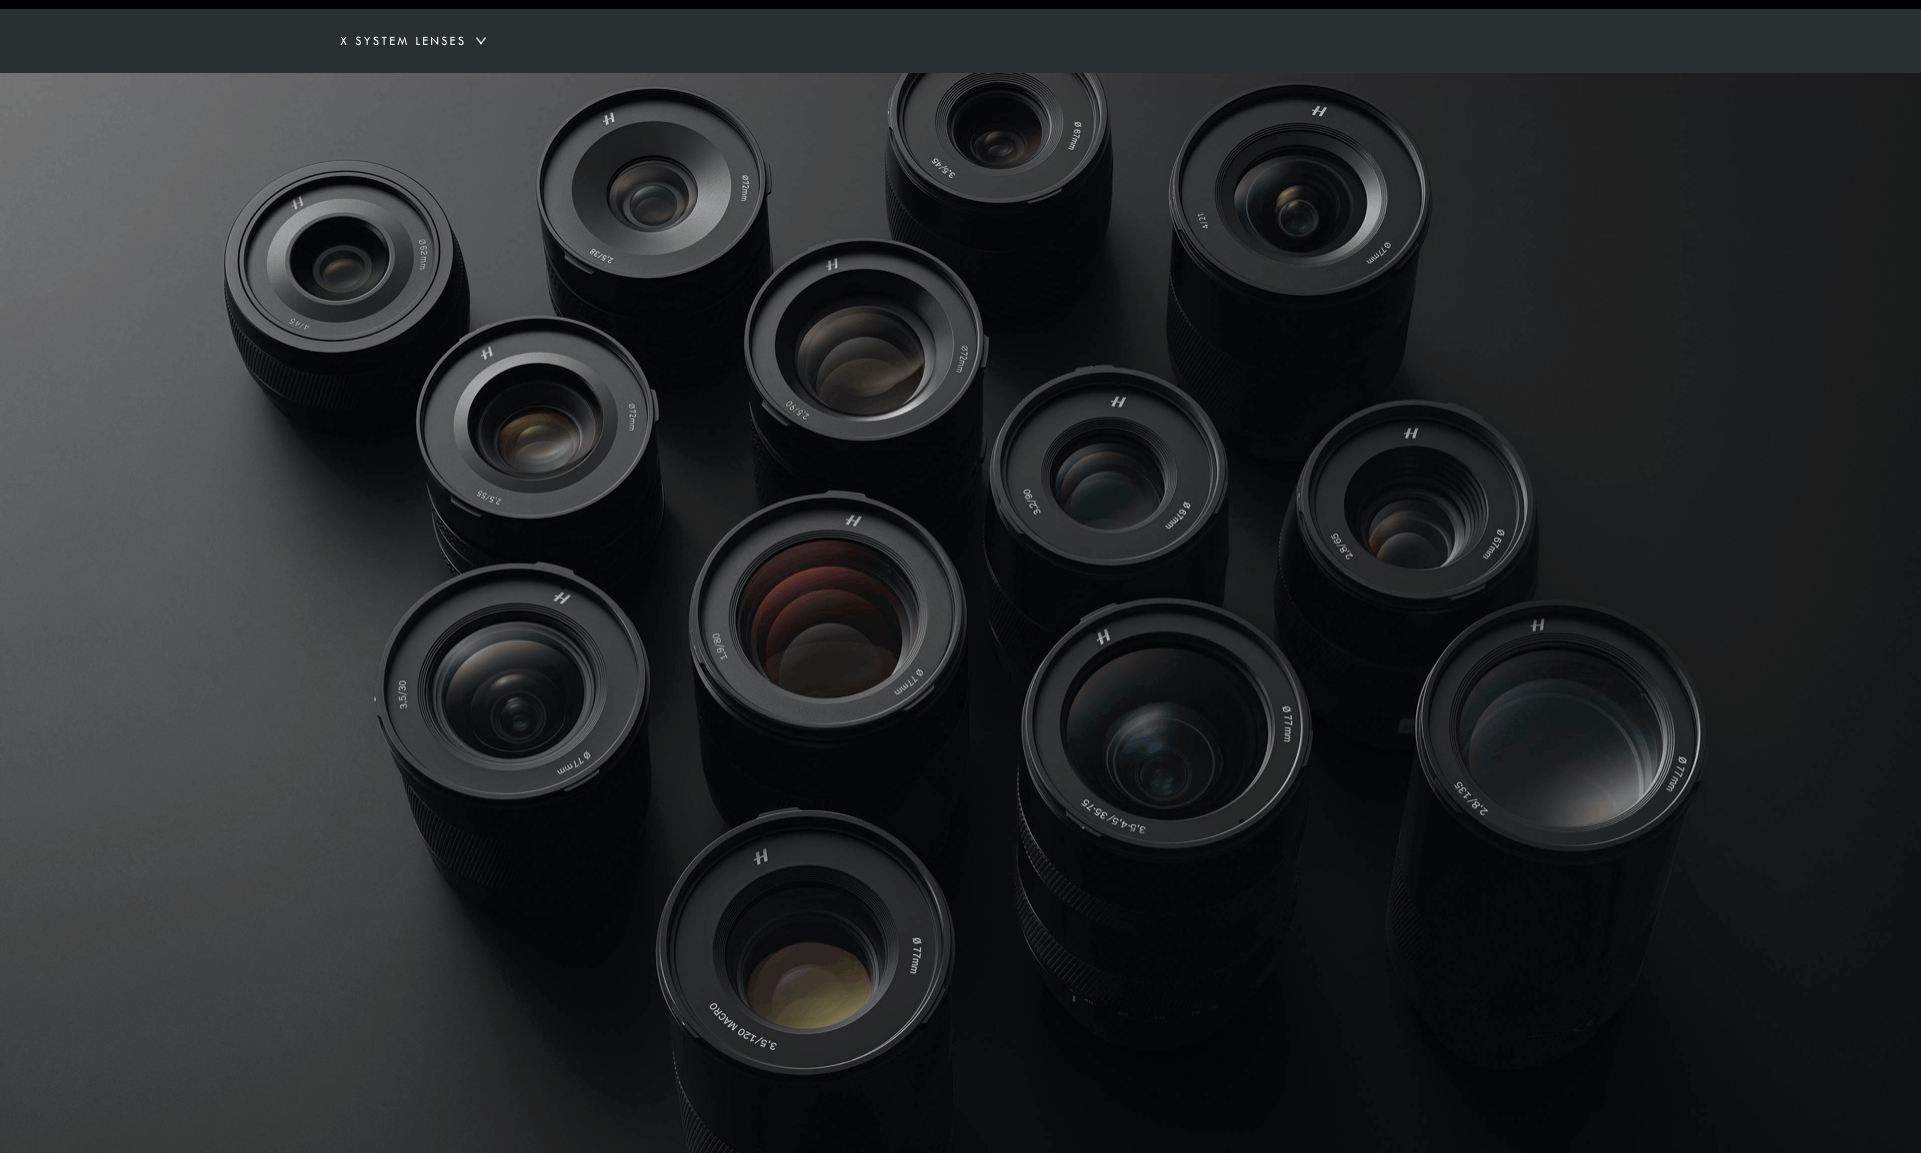 Hasselblad's 13 X series Lenses